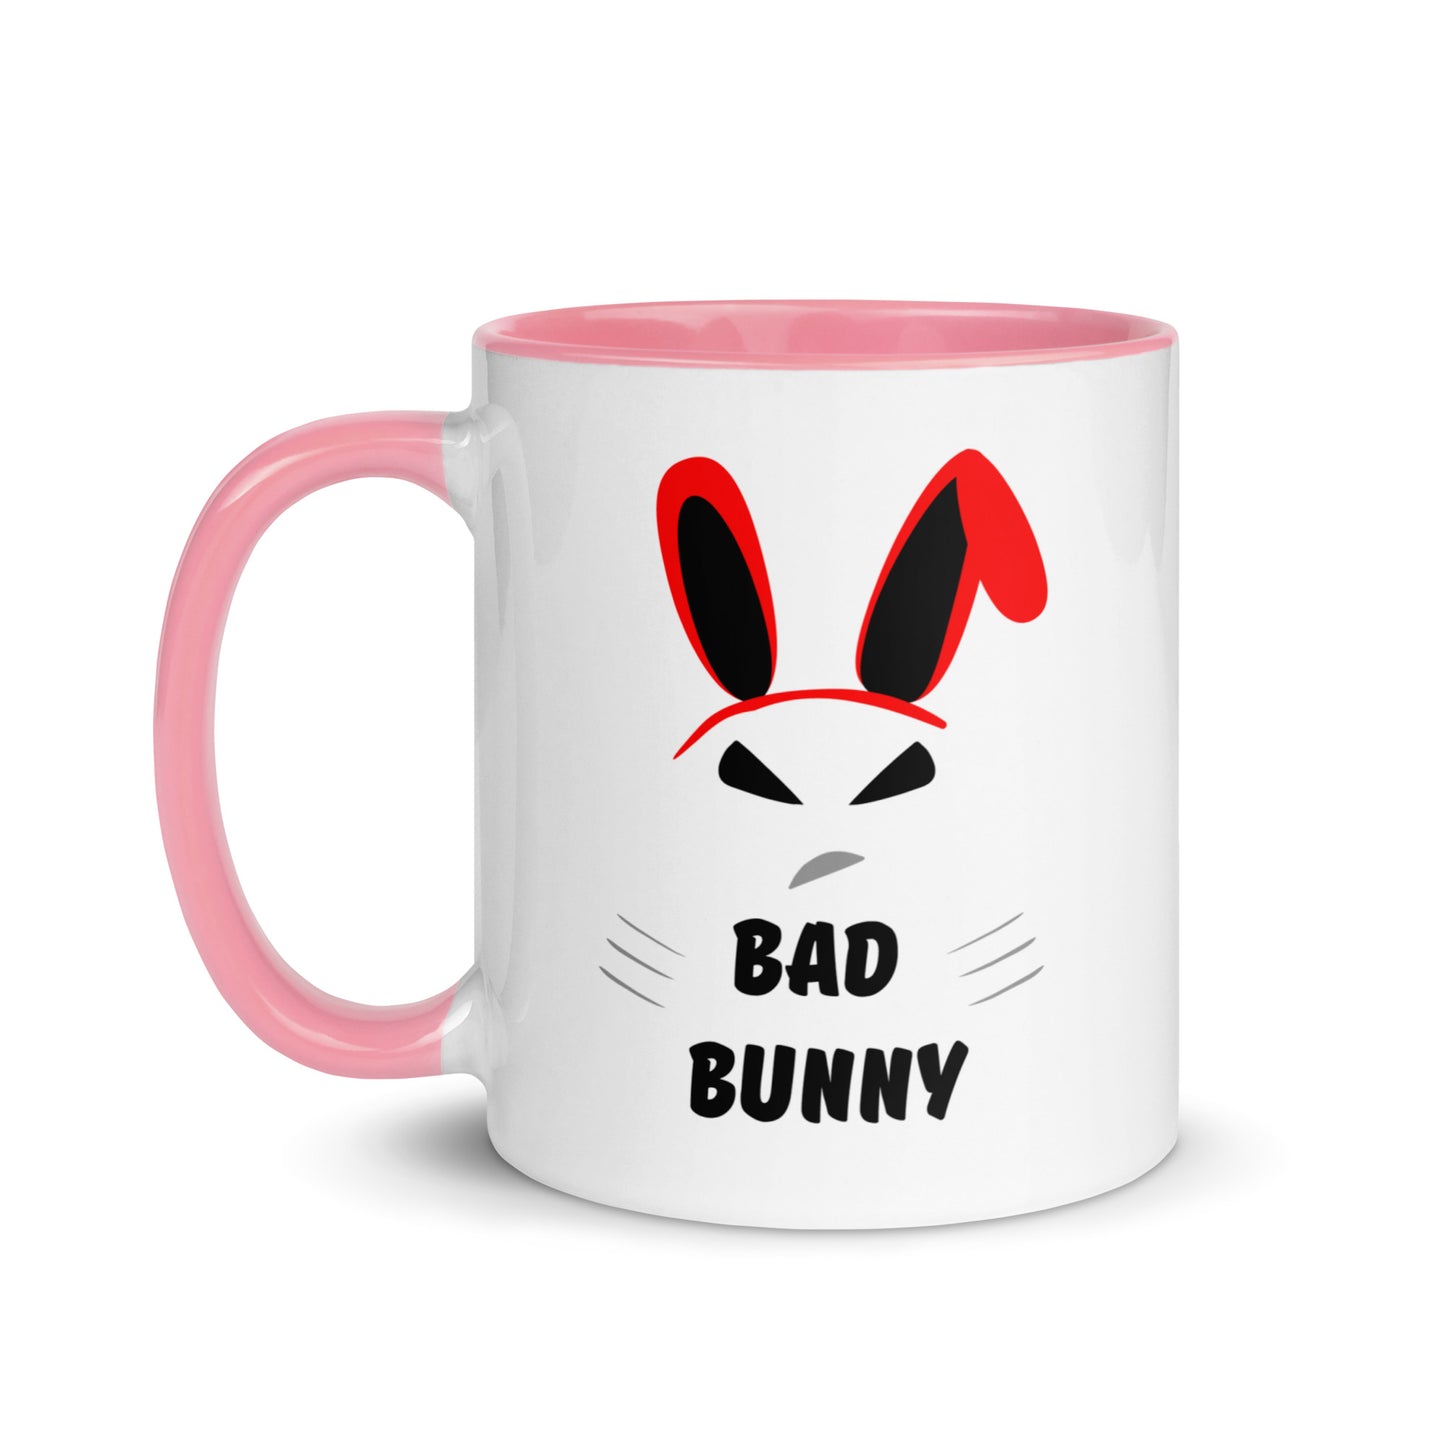 Bad Bunny Mug with Color Inside